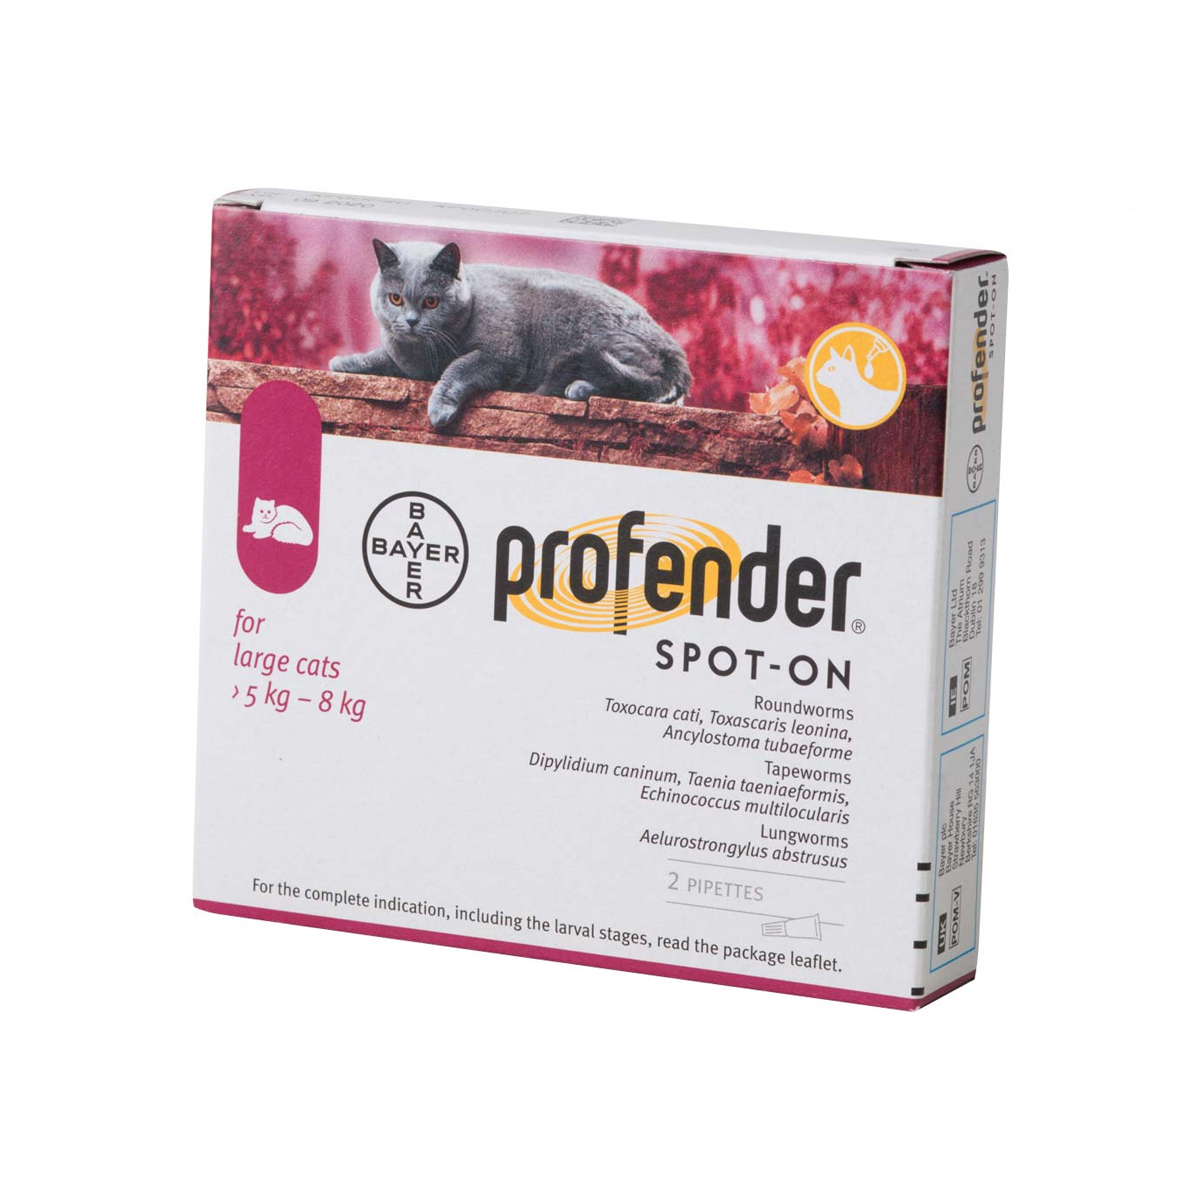 Pipetă antiparazitară Profender Cat L, pentru pisici intre 5-8kg thepetclub